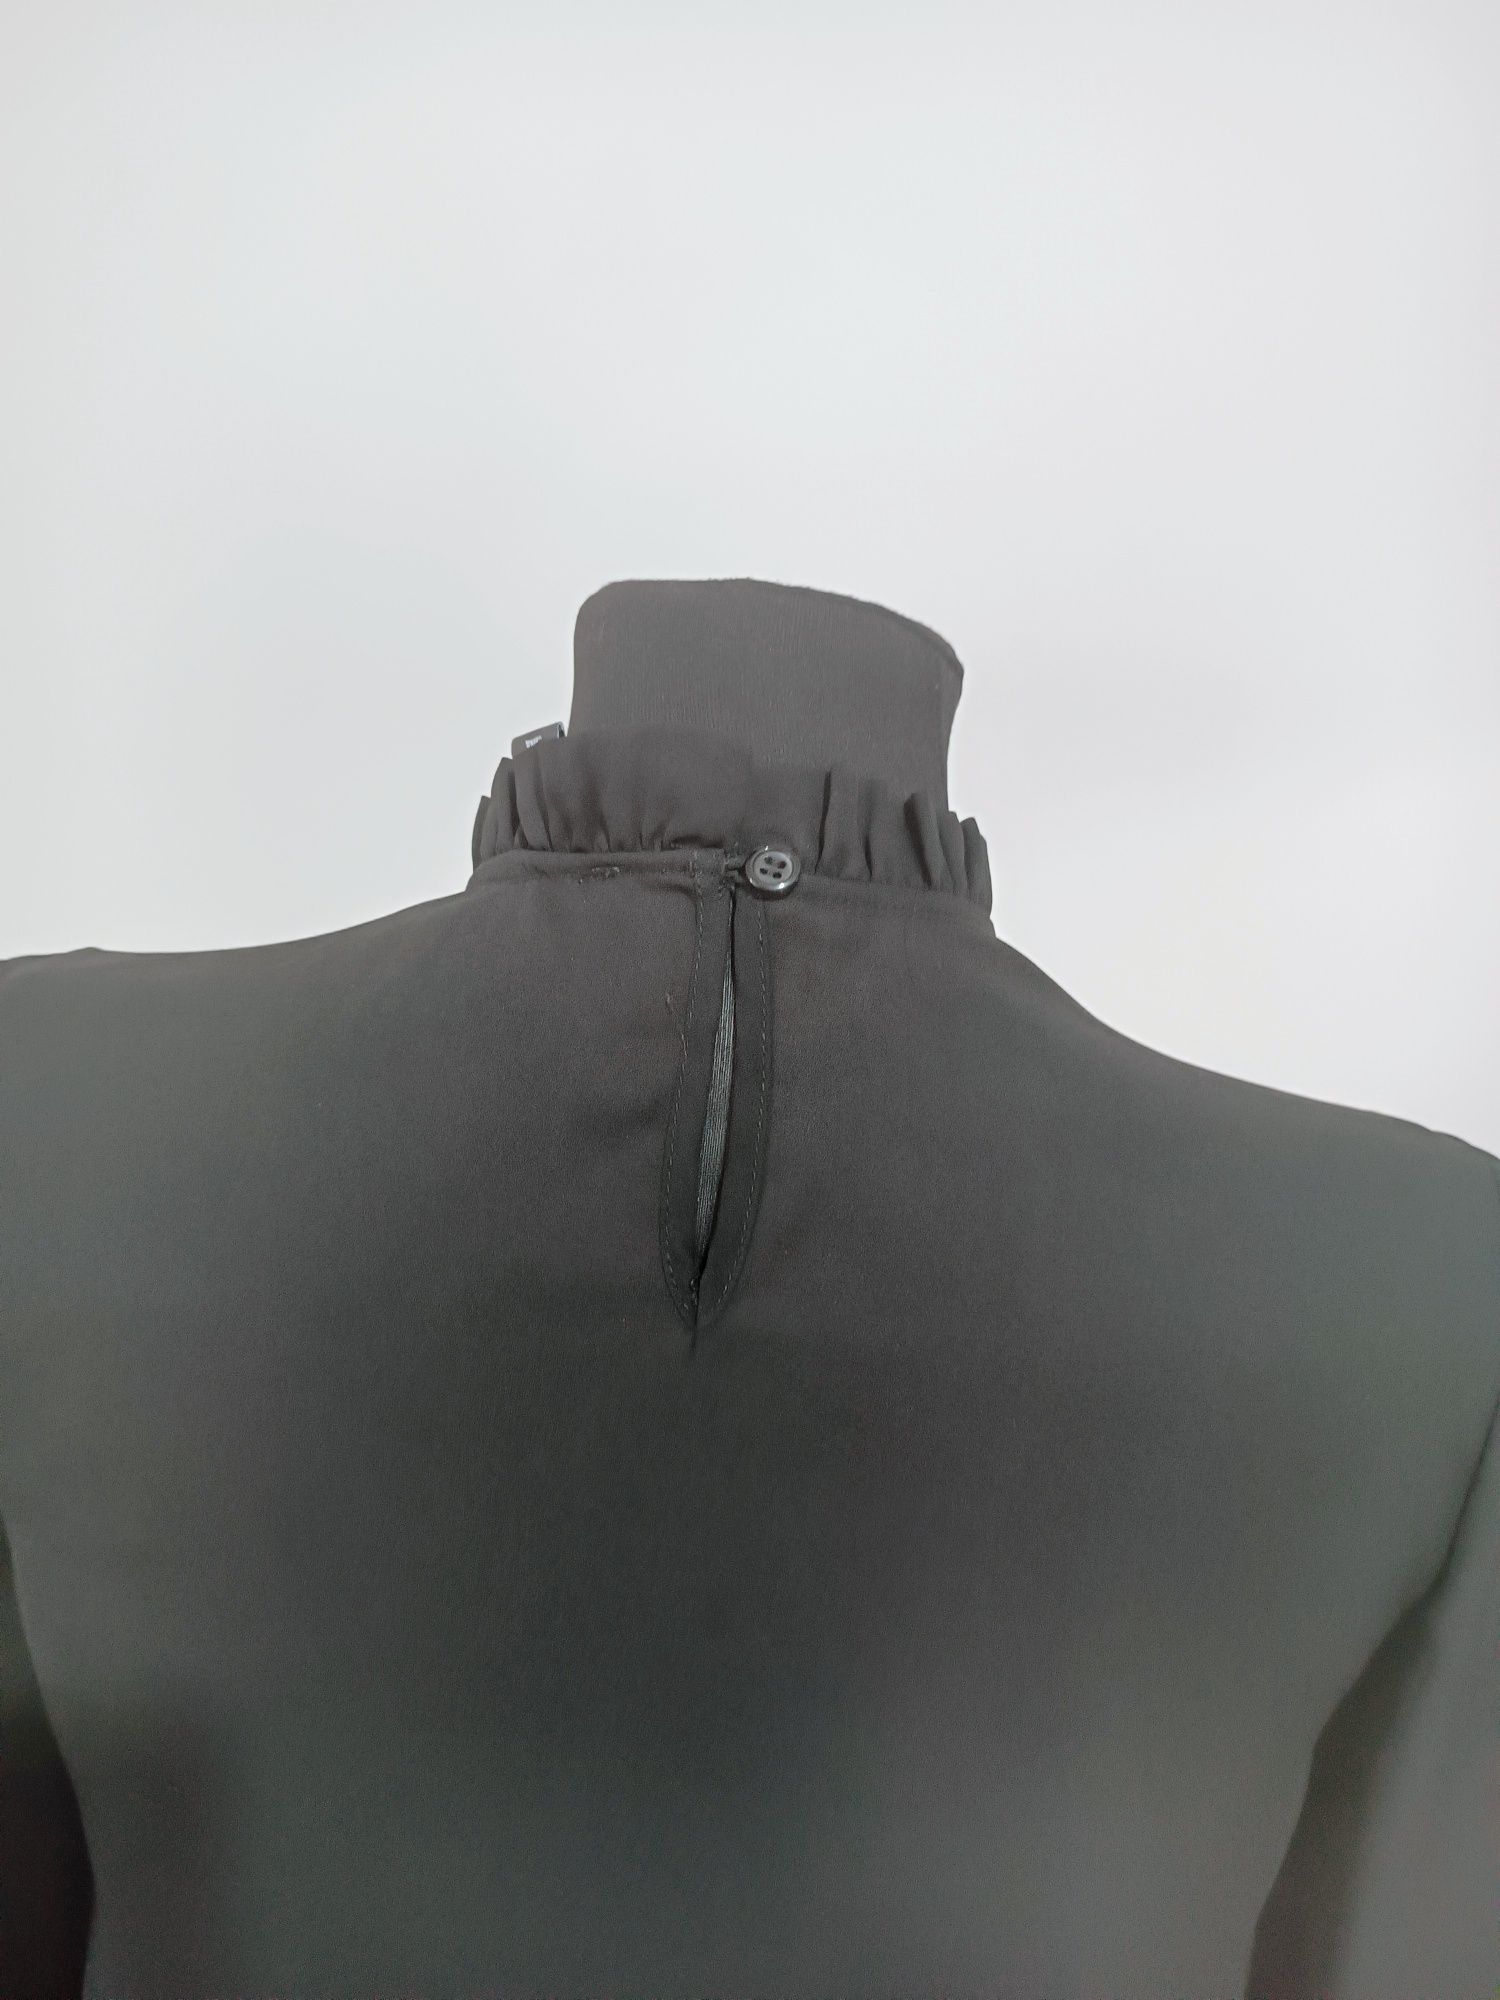 Czarna bluzka firmy Primark używana rozmiar 34/36